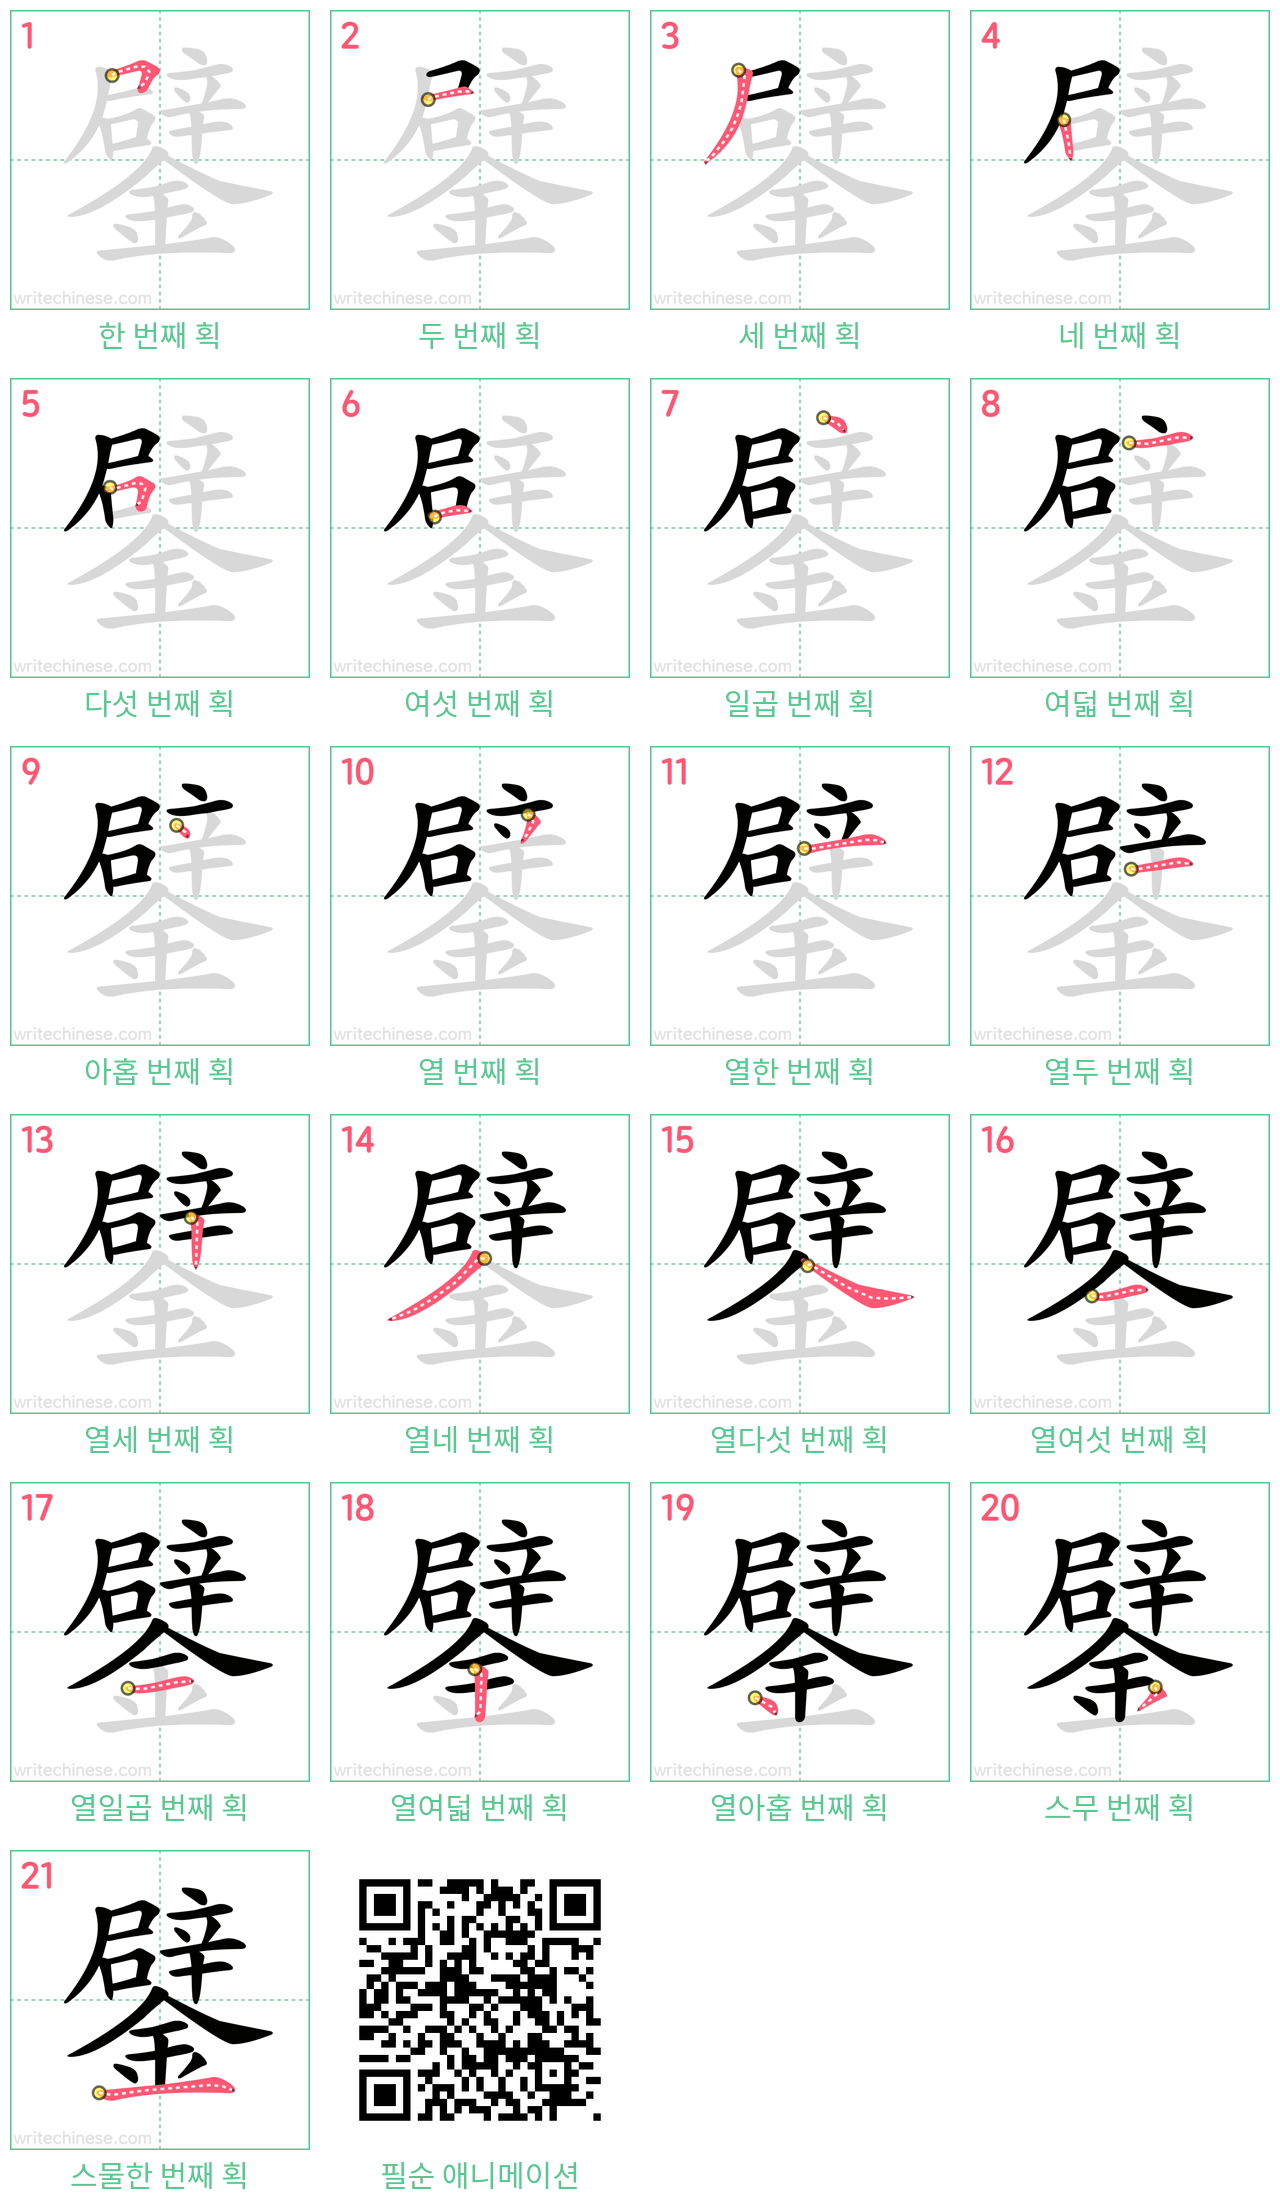 鐾 step-by-step stroke order diagrams